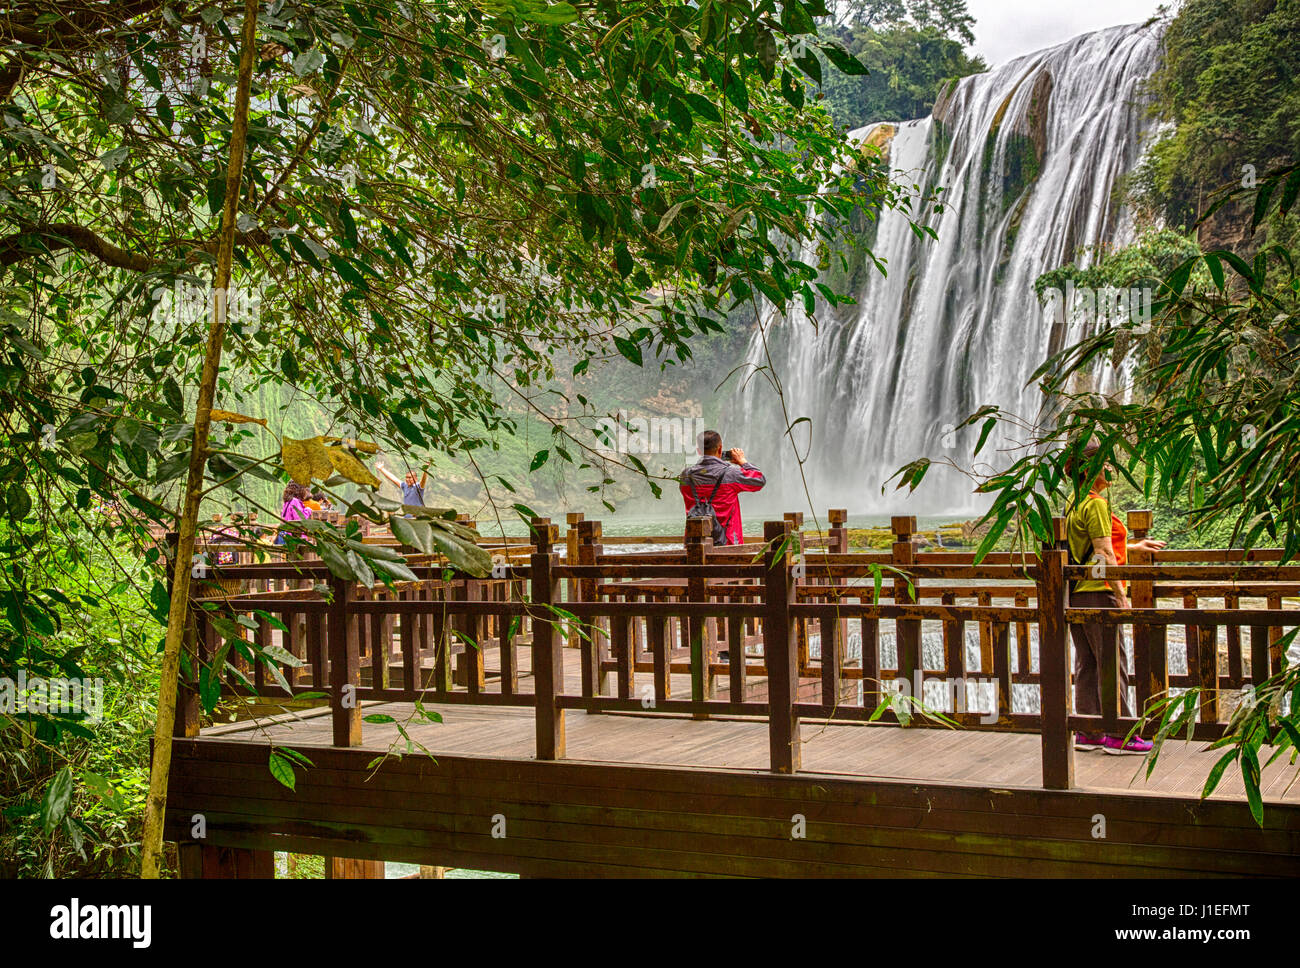 Provinz Guizhou, China.  Mann, Bild von der gelben Frucht Baum (Huangguoshu) Wasserfall. Stockfoto